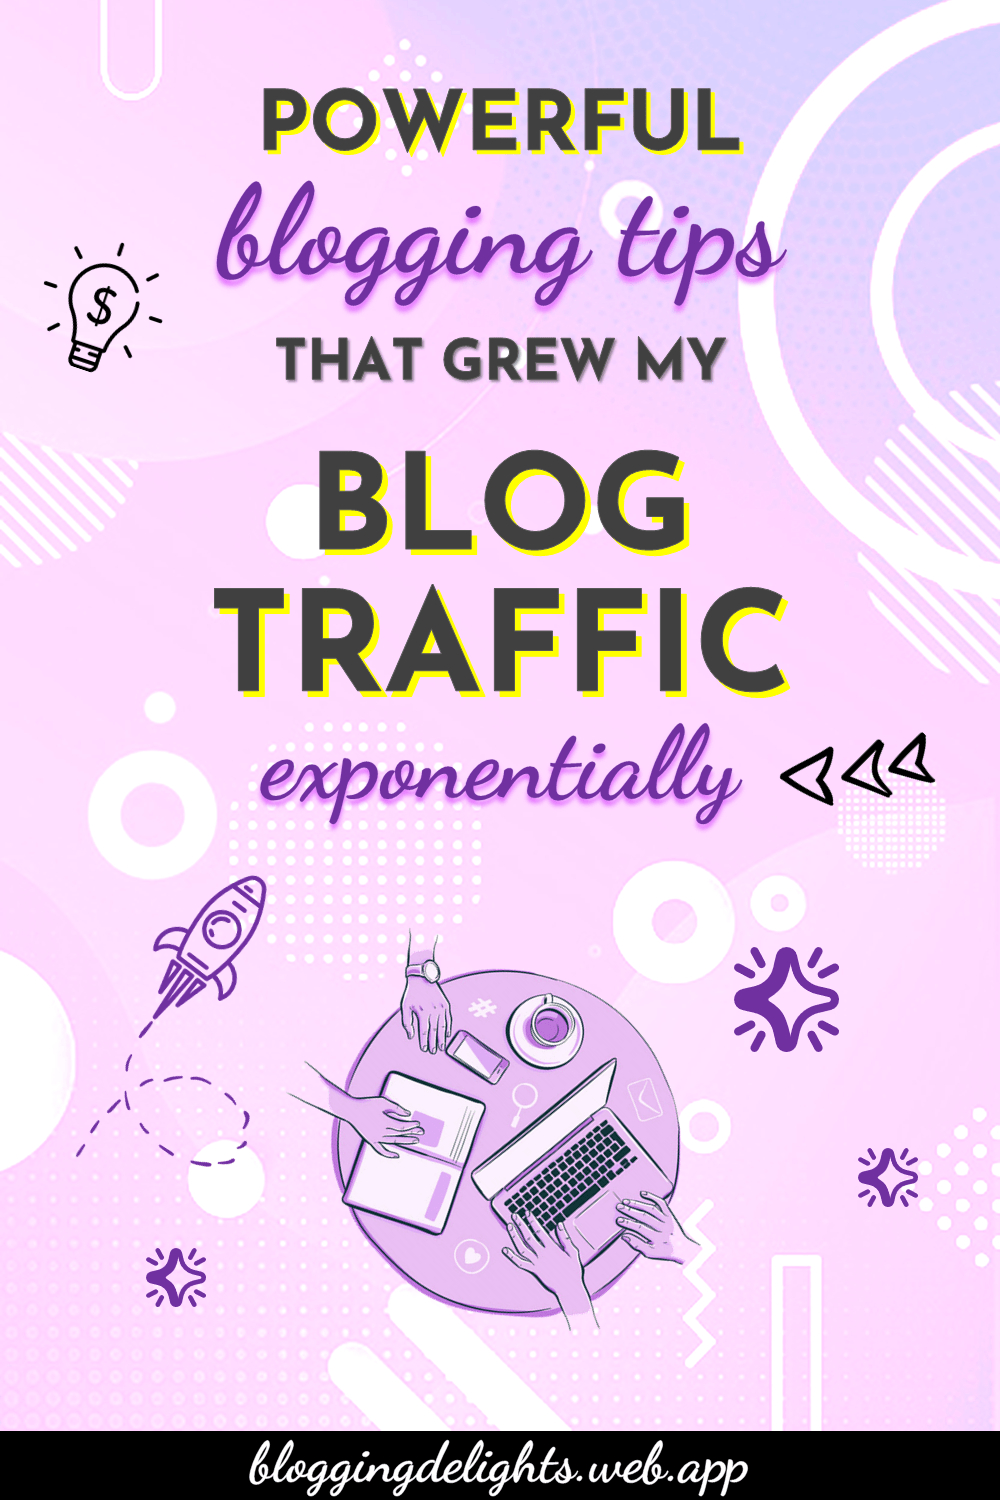 increase-blog-traffic